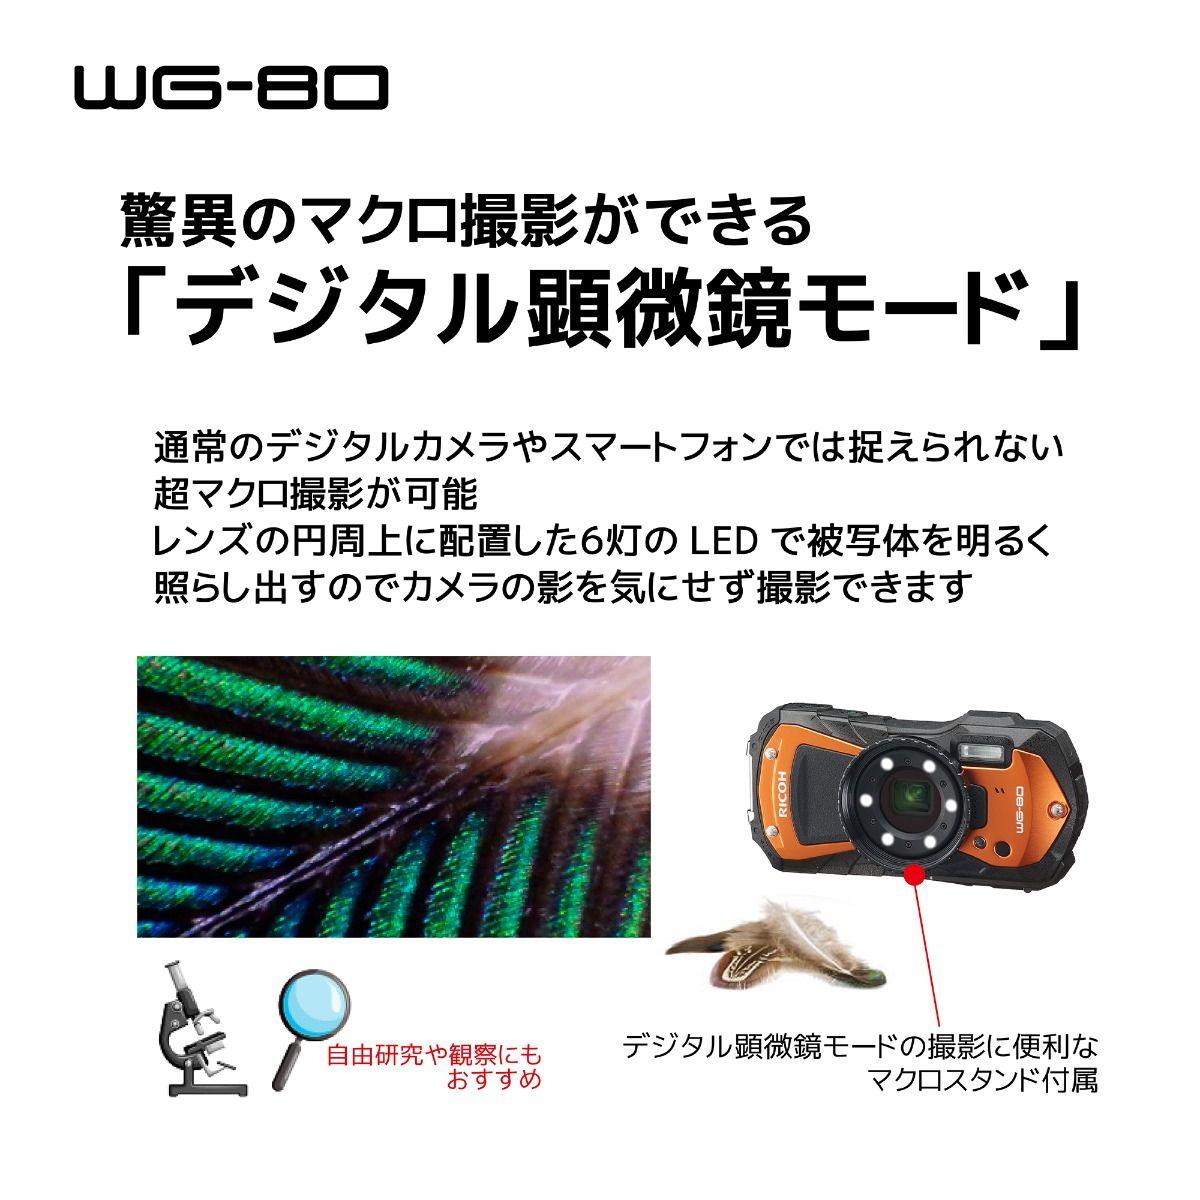 大人気新品 1台 デジタルカメラ 【新品・未使用】RICOH WG-80 代引き